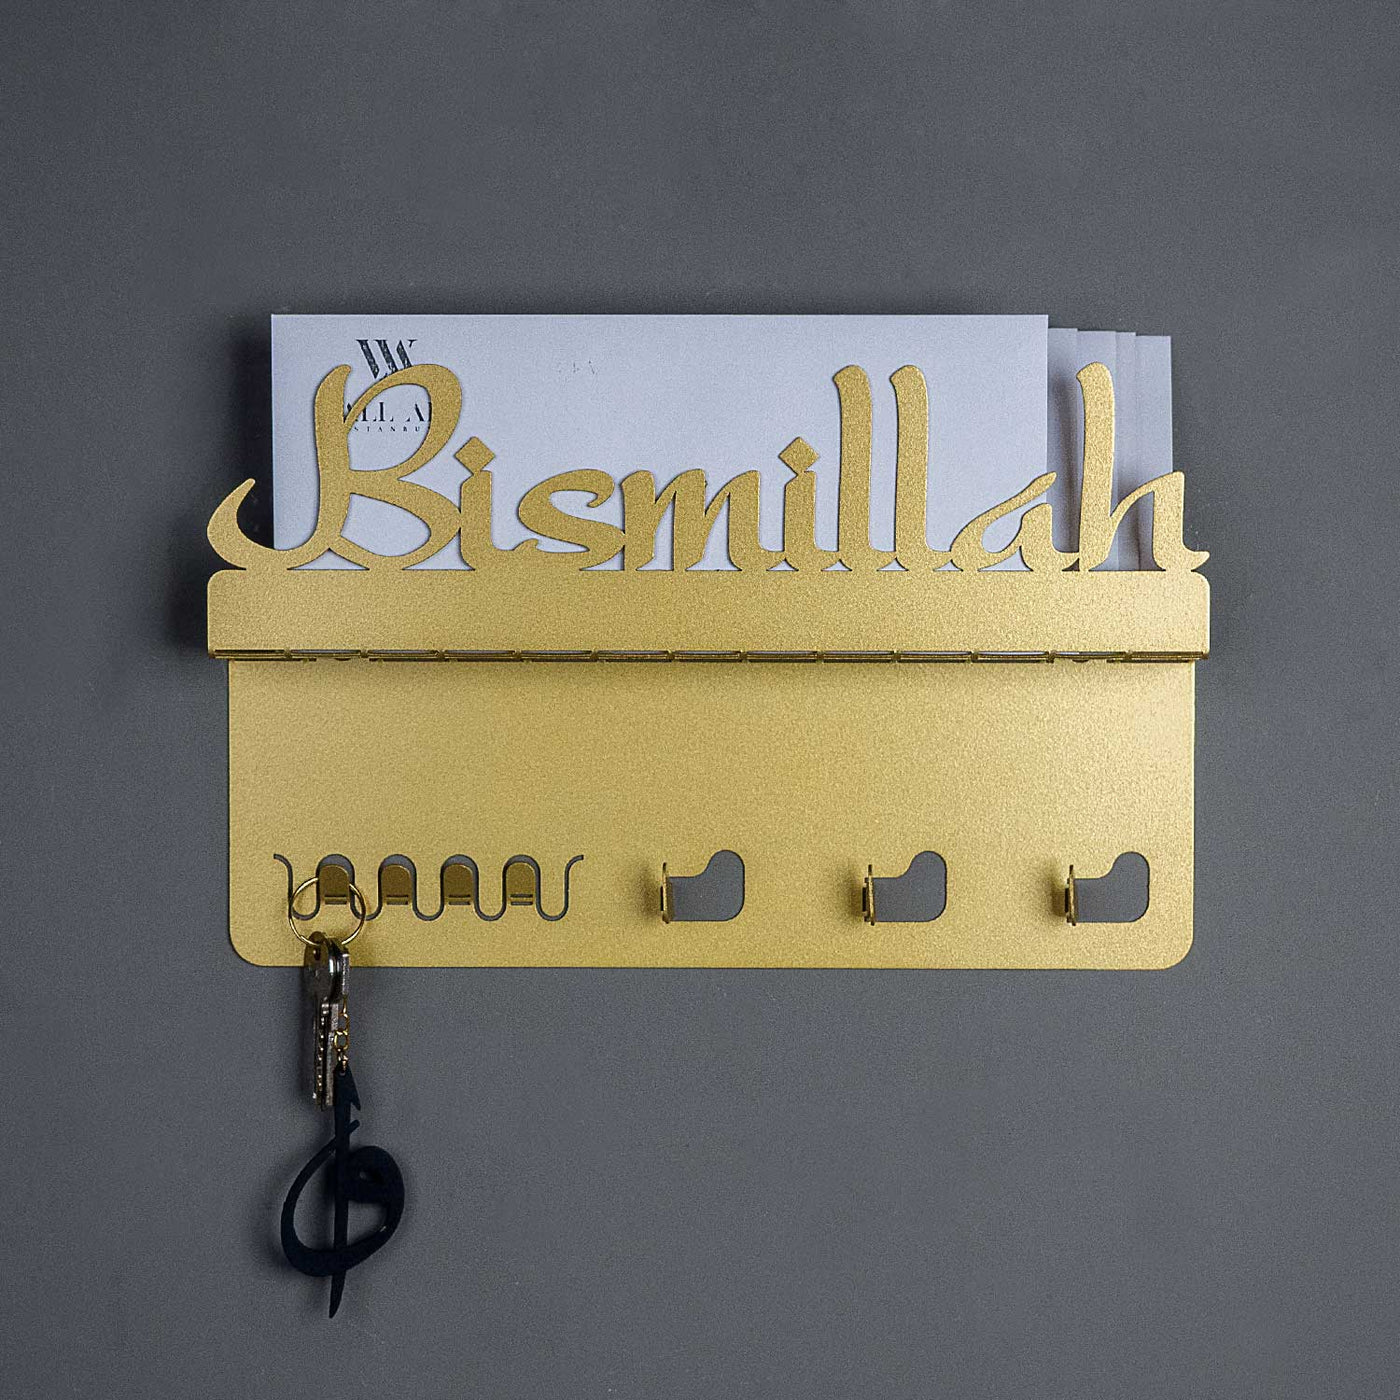 Bismillah Metal Wall Key Holder - WAMH026